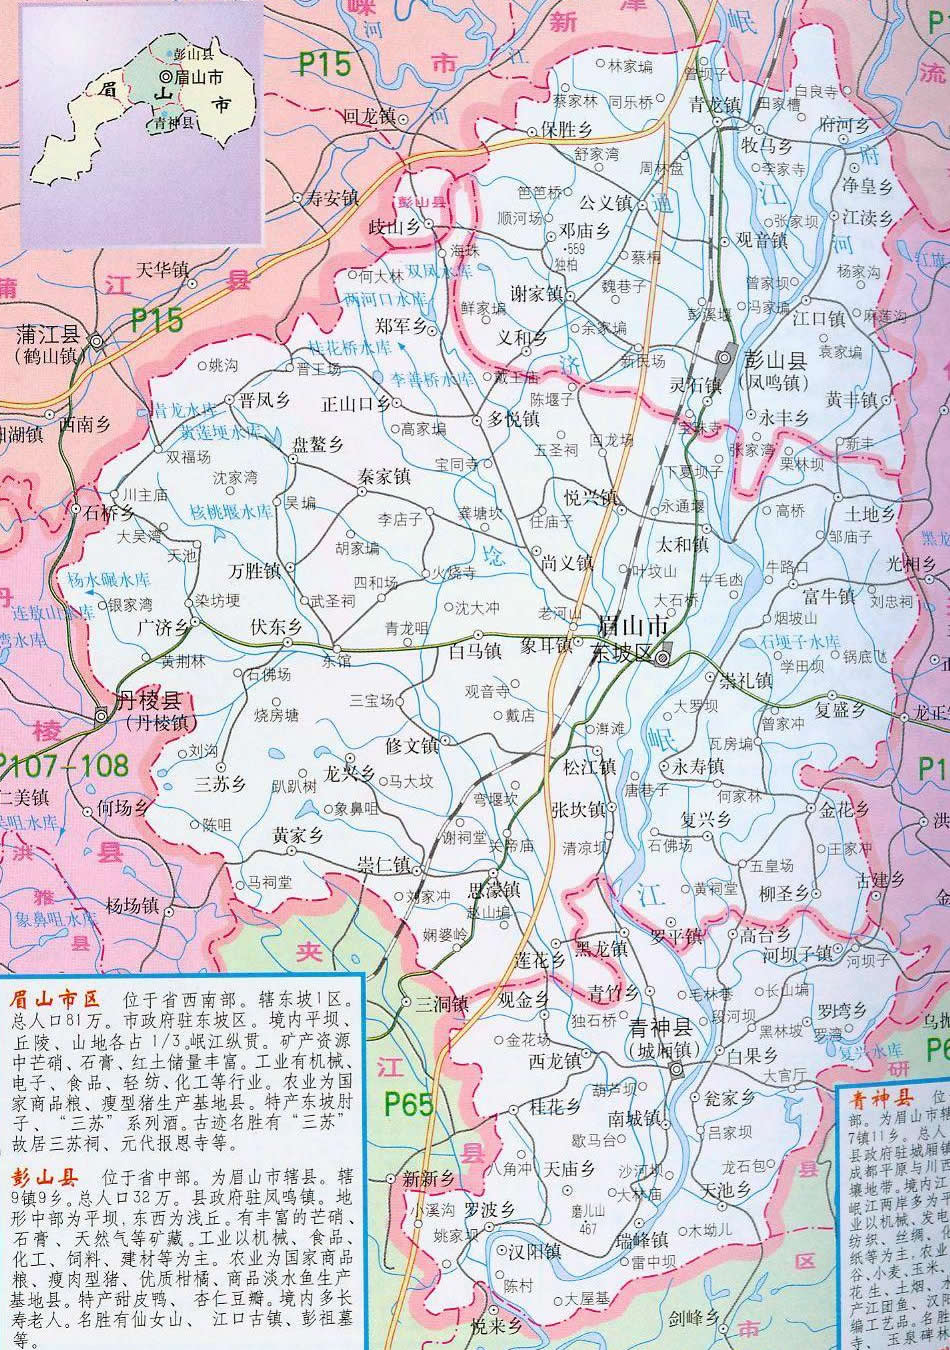 (2)眉山县设立东坡区,以原眉山县的行政区域为东坡区的行政区域.